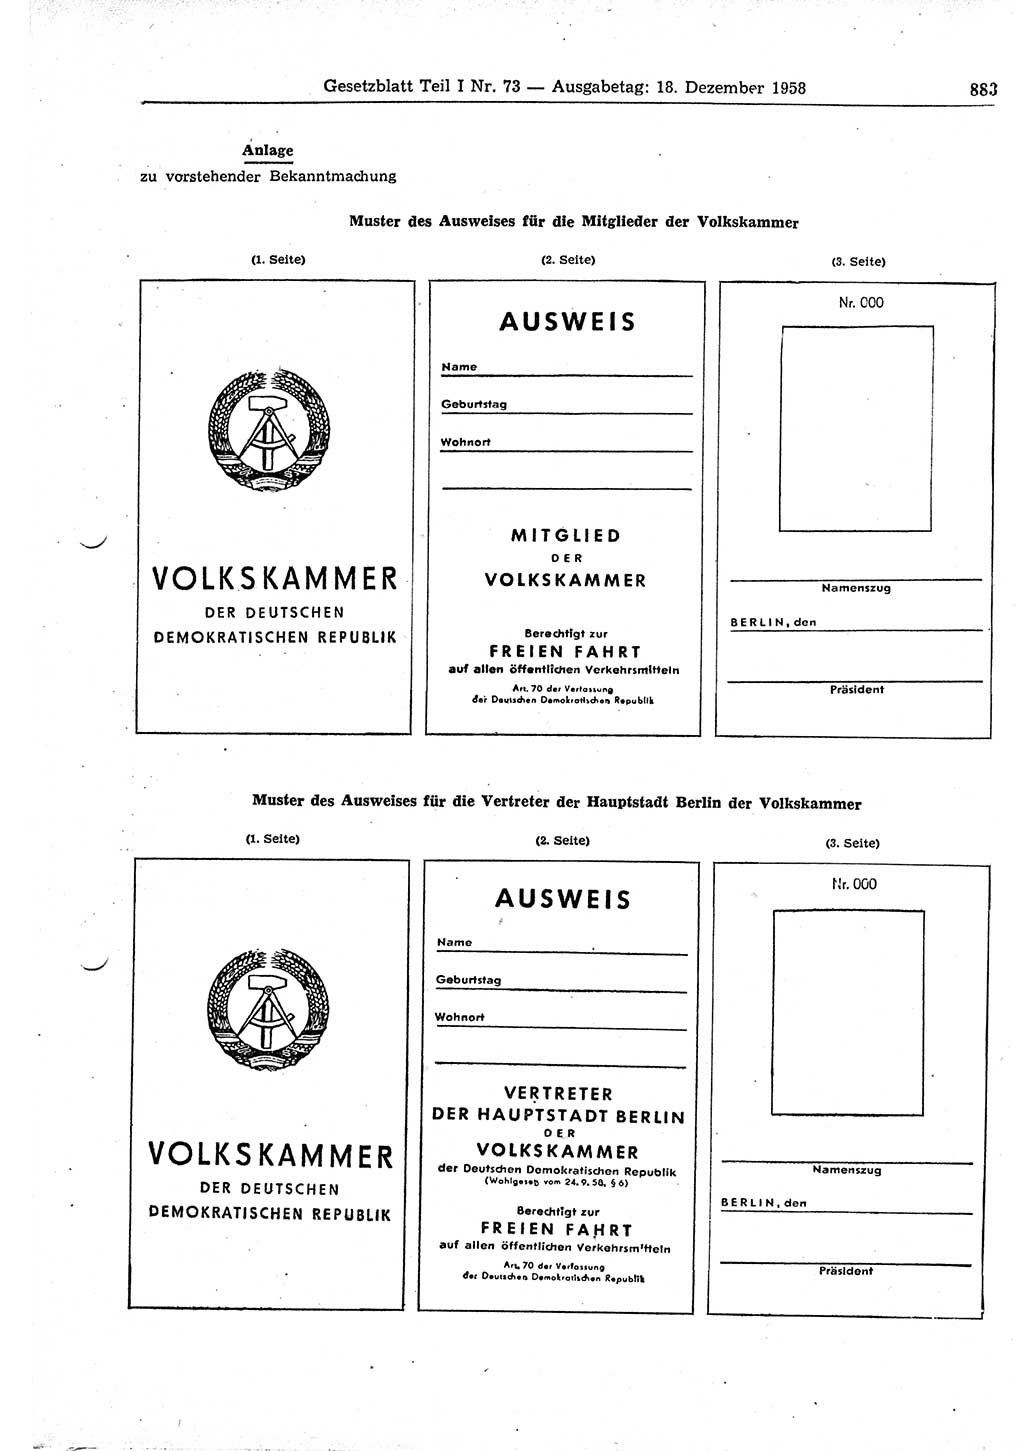 Gesetzblatt (GBl.) der Deutschen Demokratischen Republik (DDR) Teil Ⅰ 1958, Seite 883 (GBl. DDR Ⅰ 1958, S. 883)